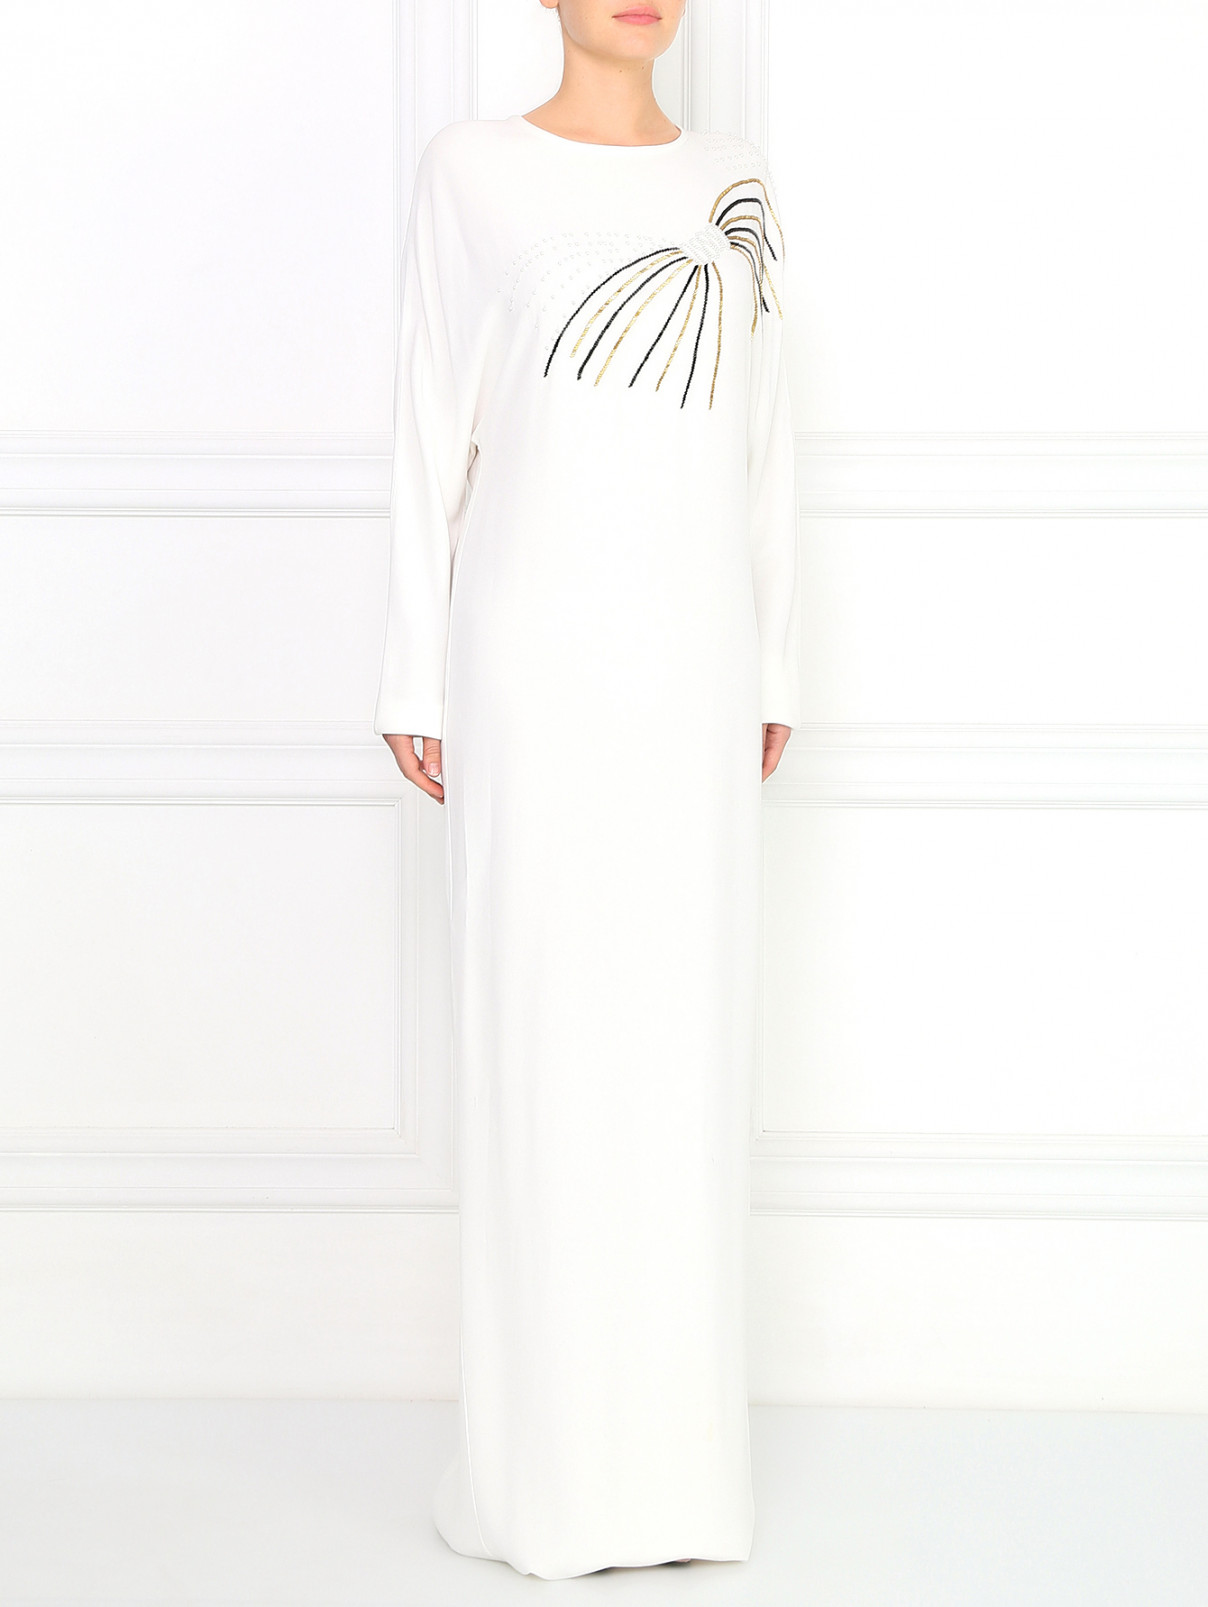 Платье-макси прямого силуэта, расшитое стеклярусом Daniele Carlotta  –  Модель Общий вид  – Цвет:  Белый